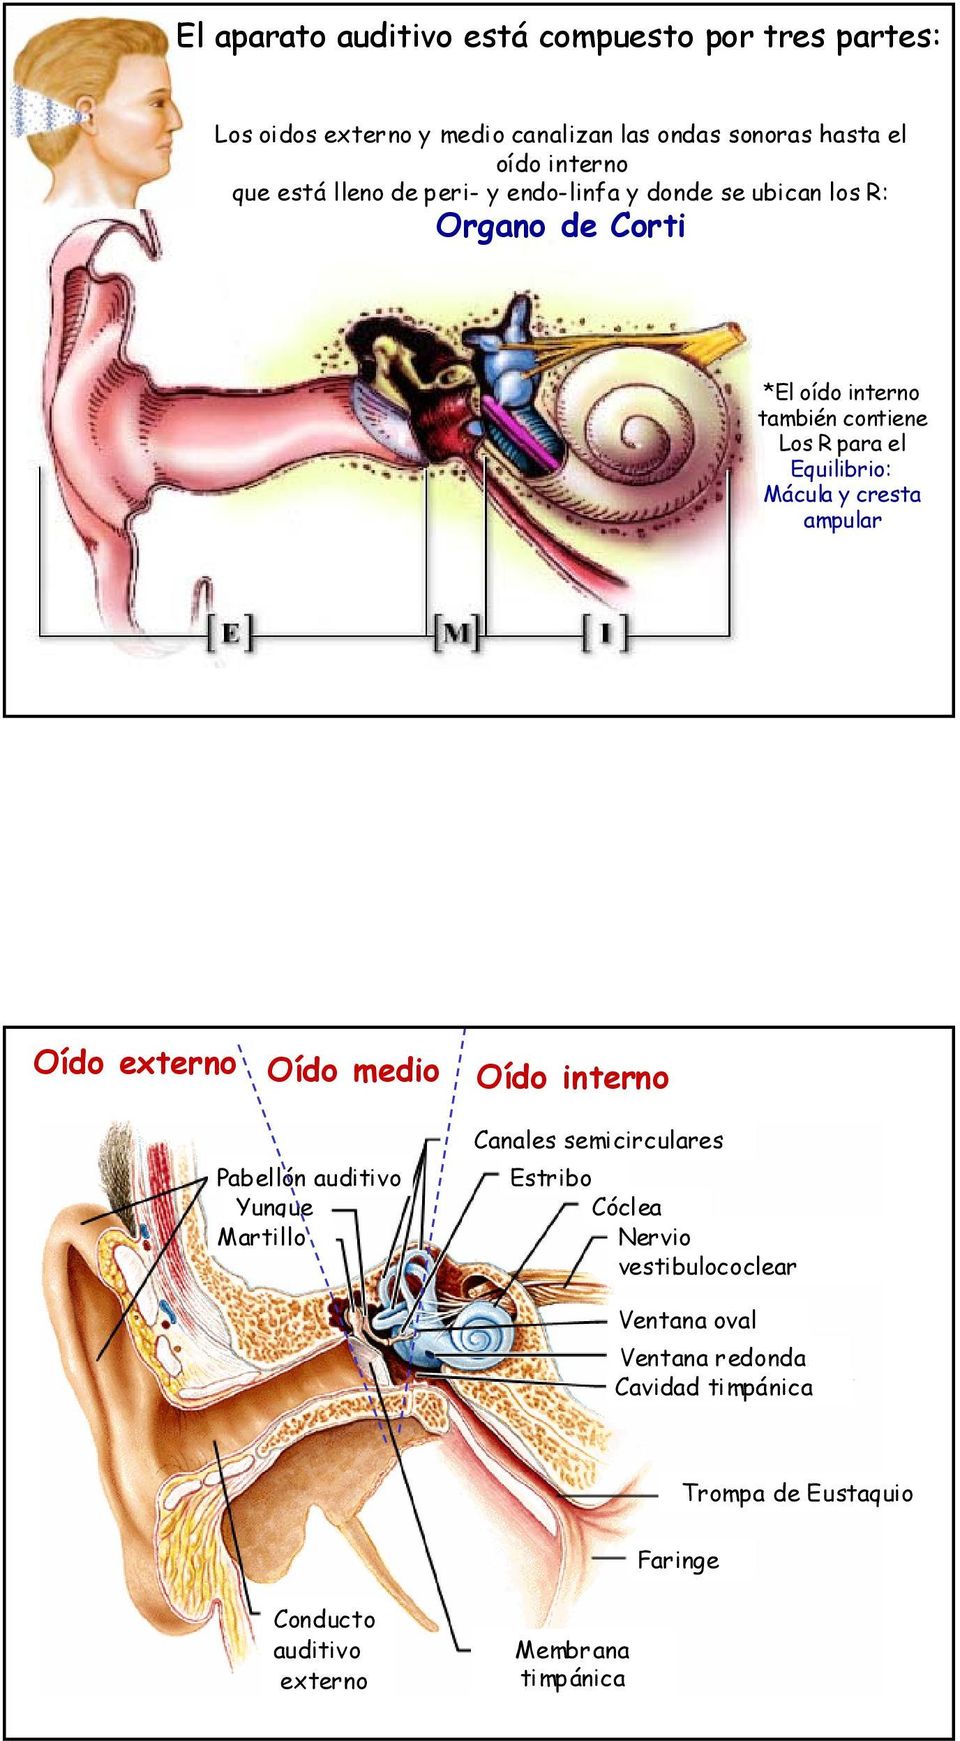 Mácula y cresta ampular Oído externo Oído medio Oído interno Pabellón auditivo Yunque Martillo Canales semicirculares Estribo Cóclea